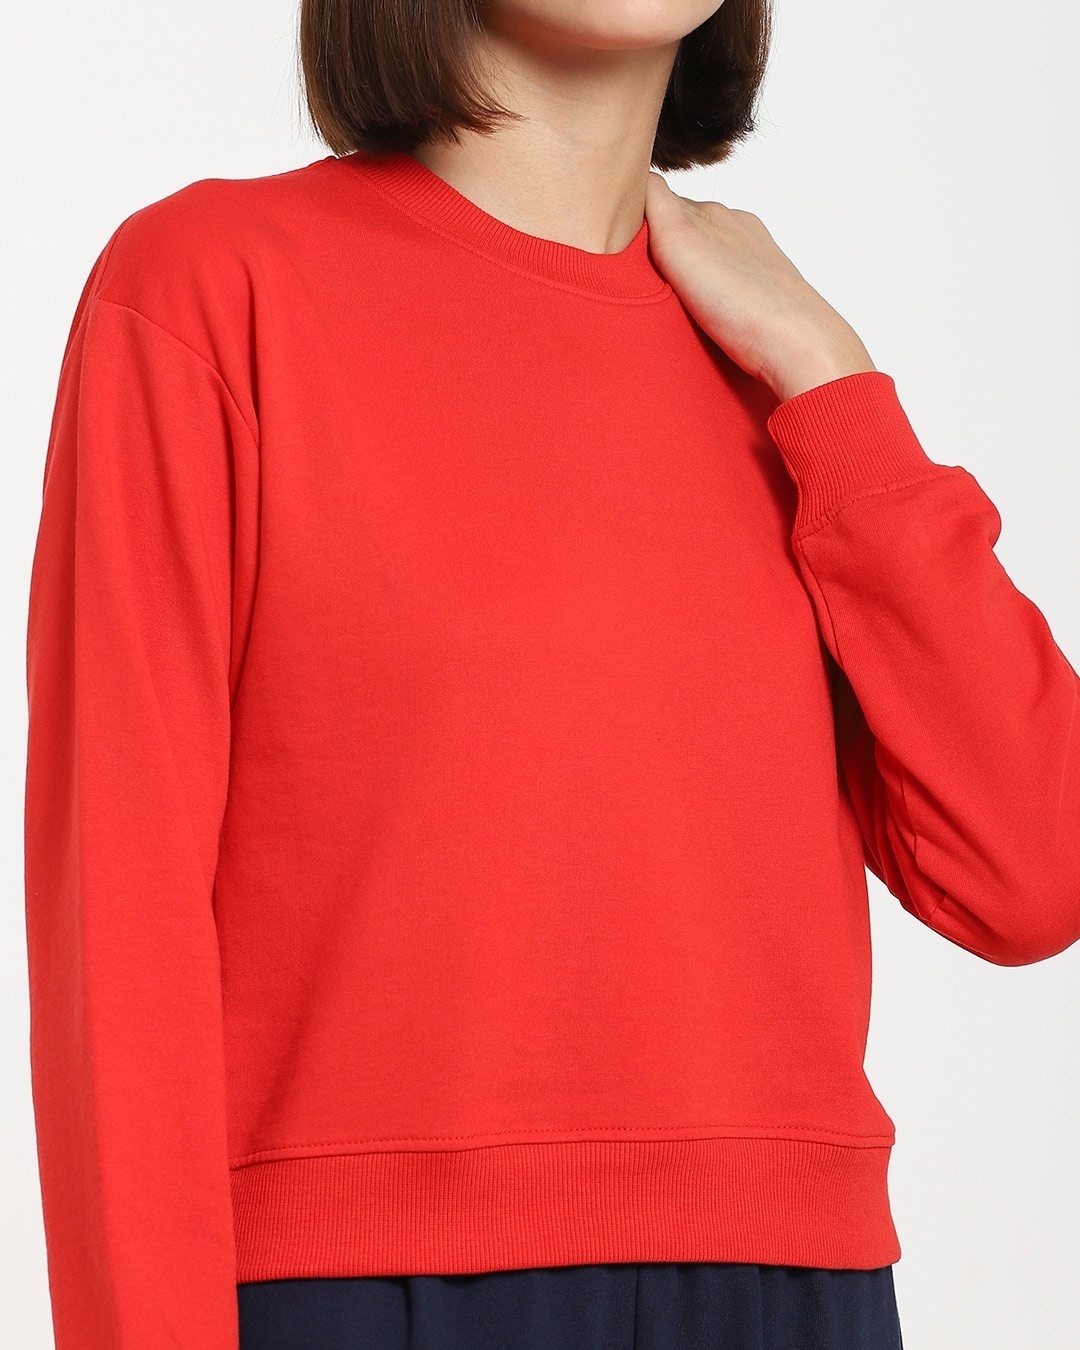 Shop Women's Solid Short Red Sweatshirt